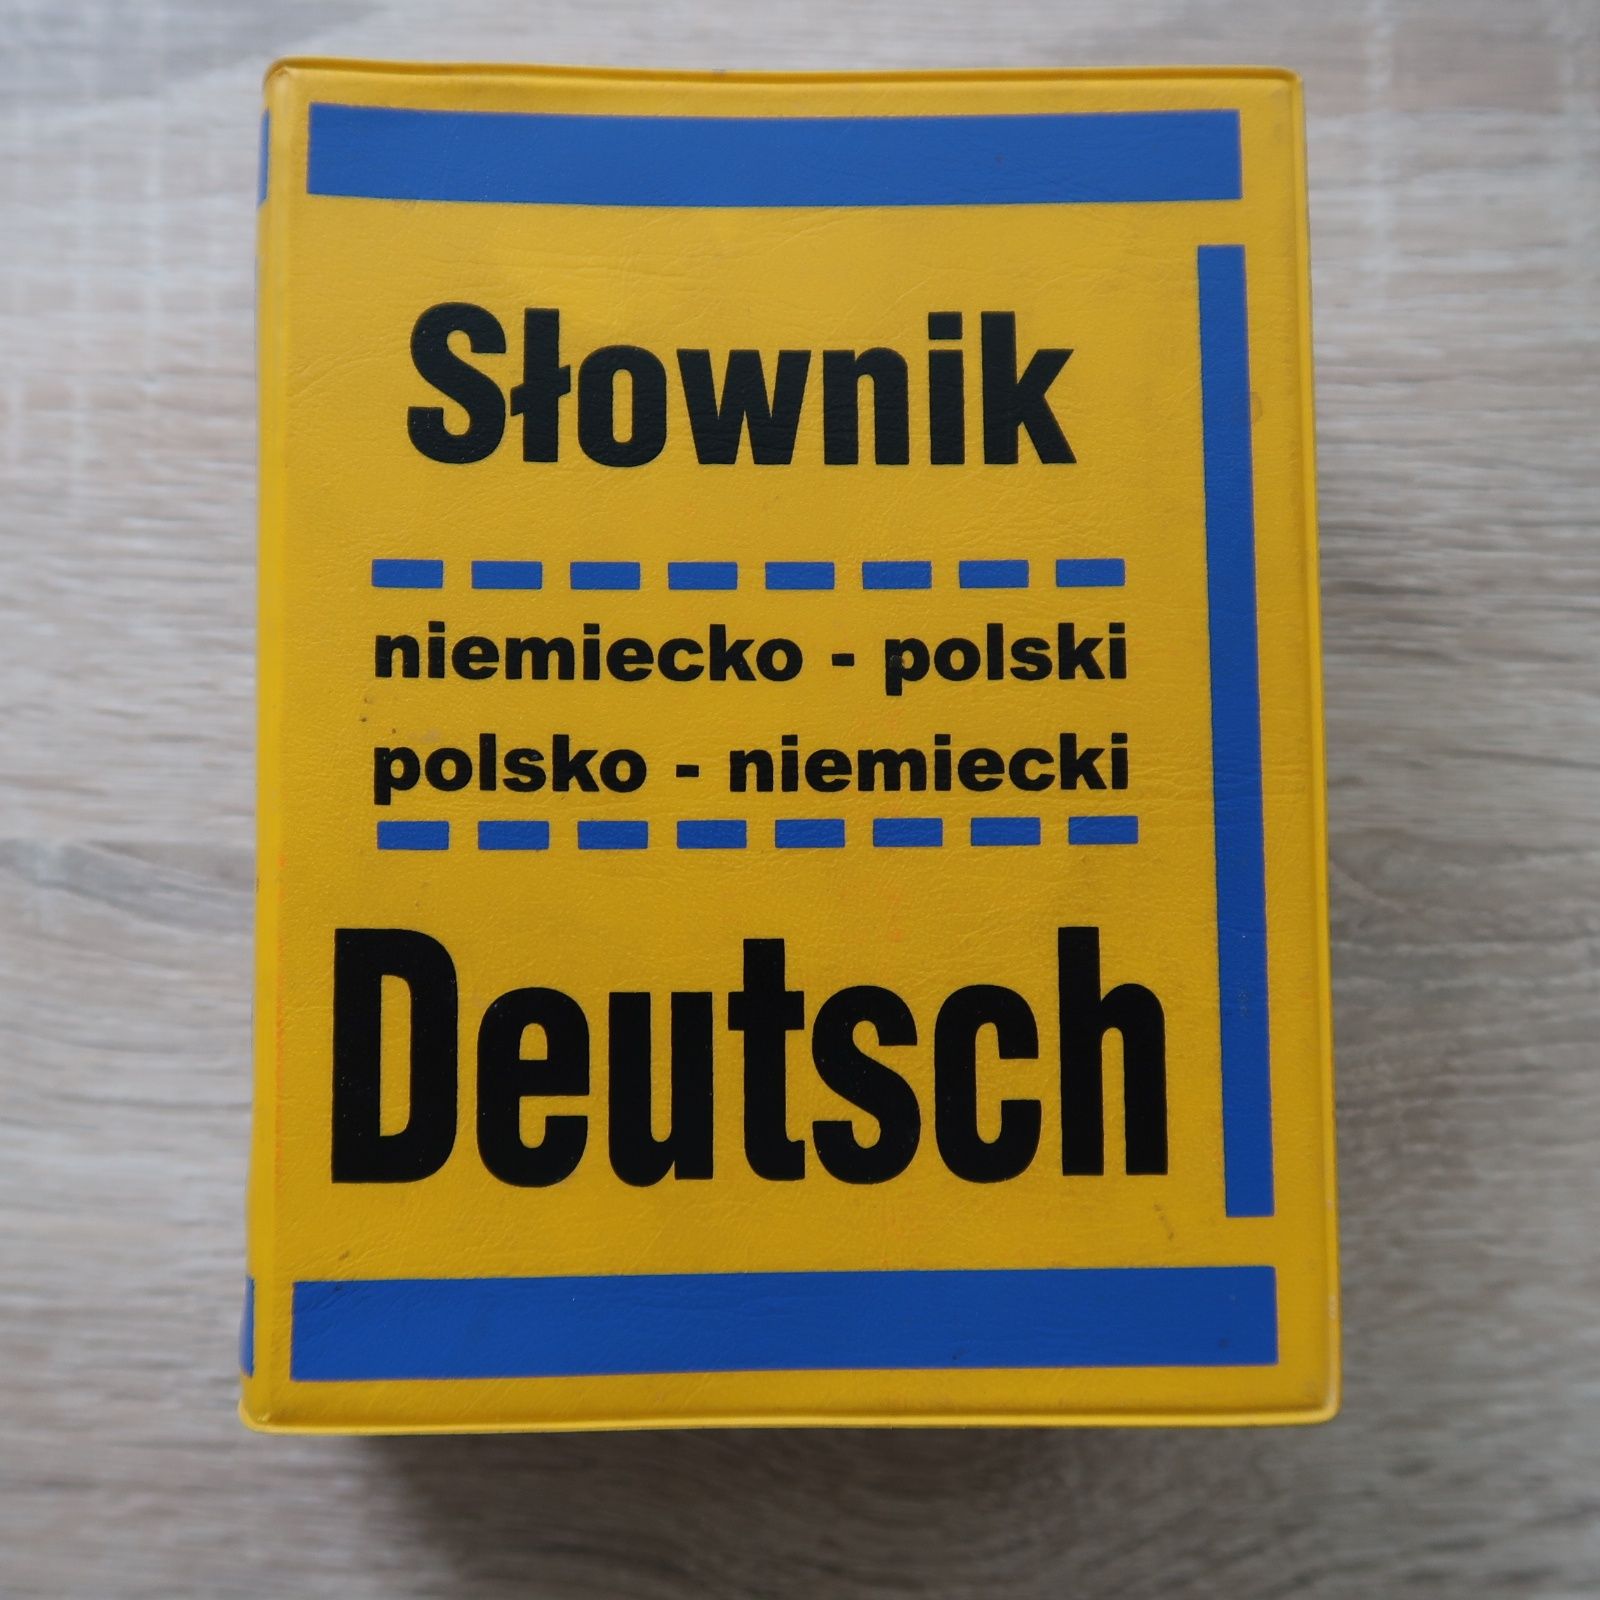 Słownik Deutsch, niemiecko-polski, polski-niemiecki